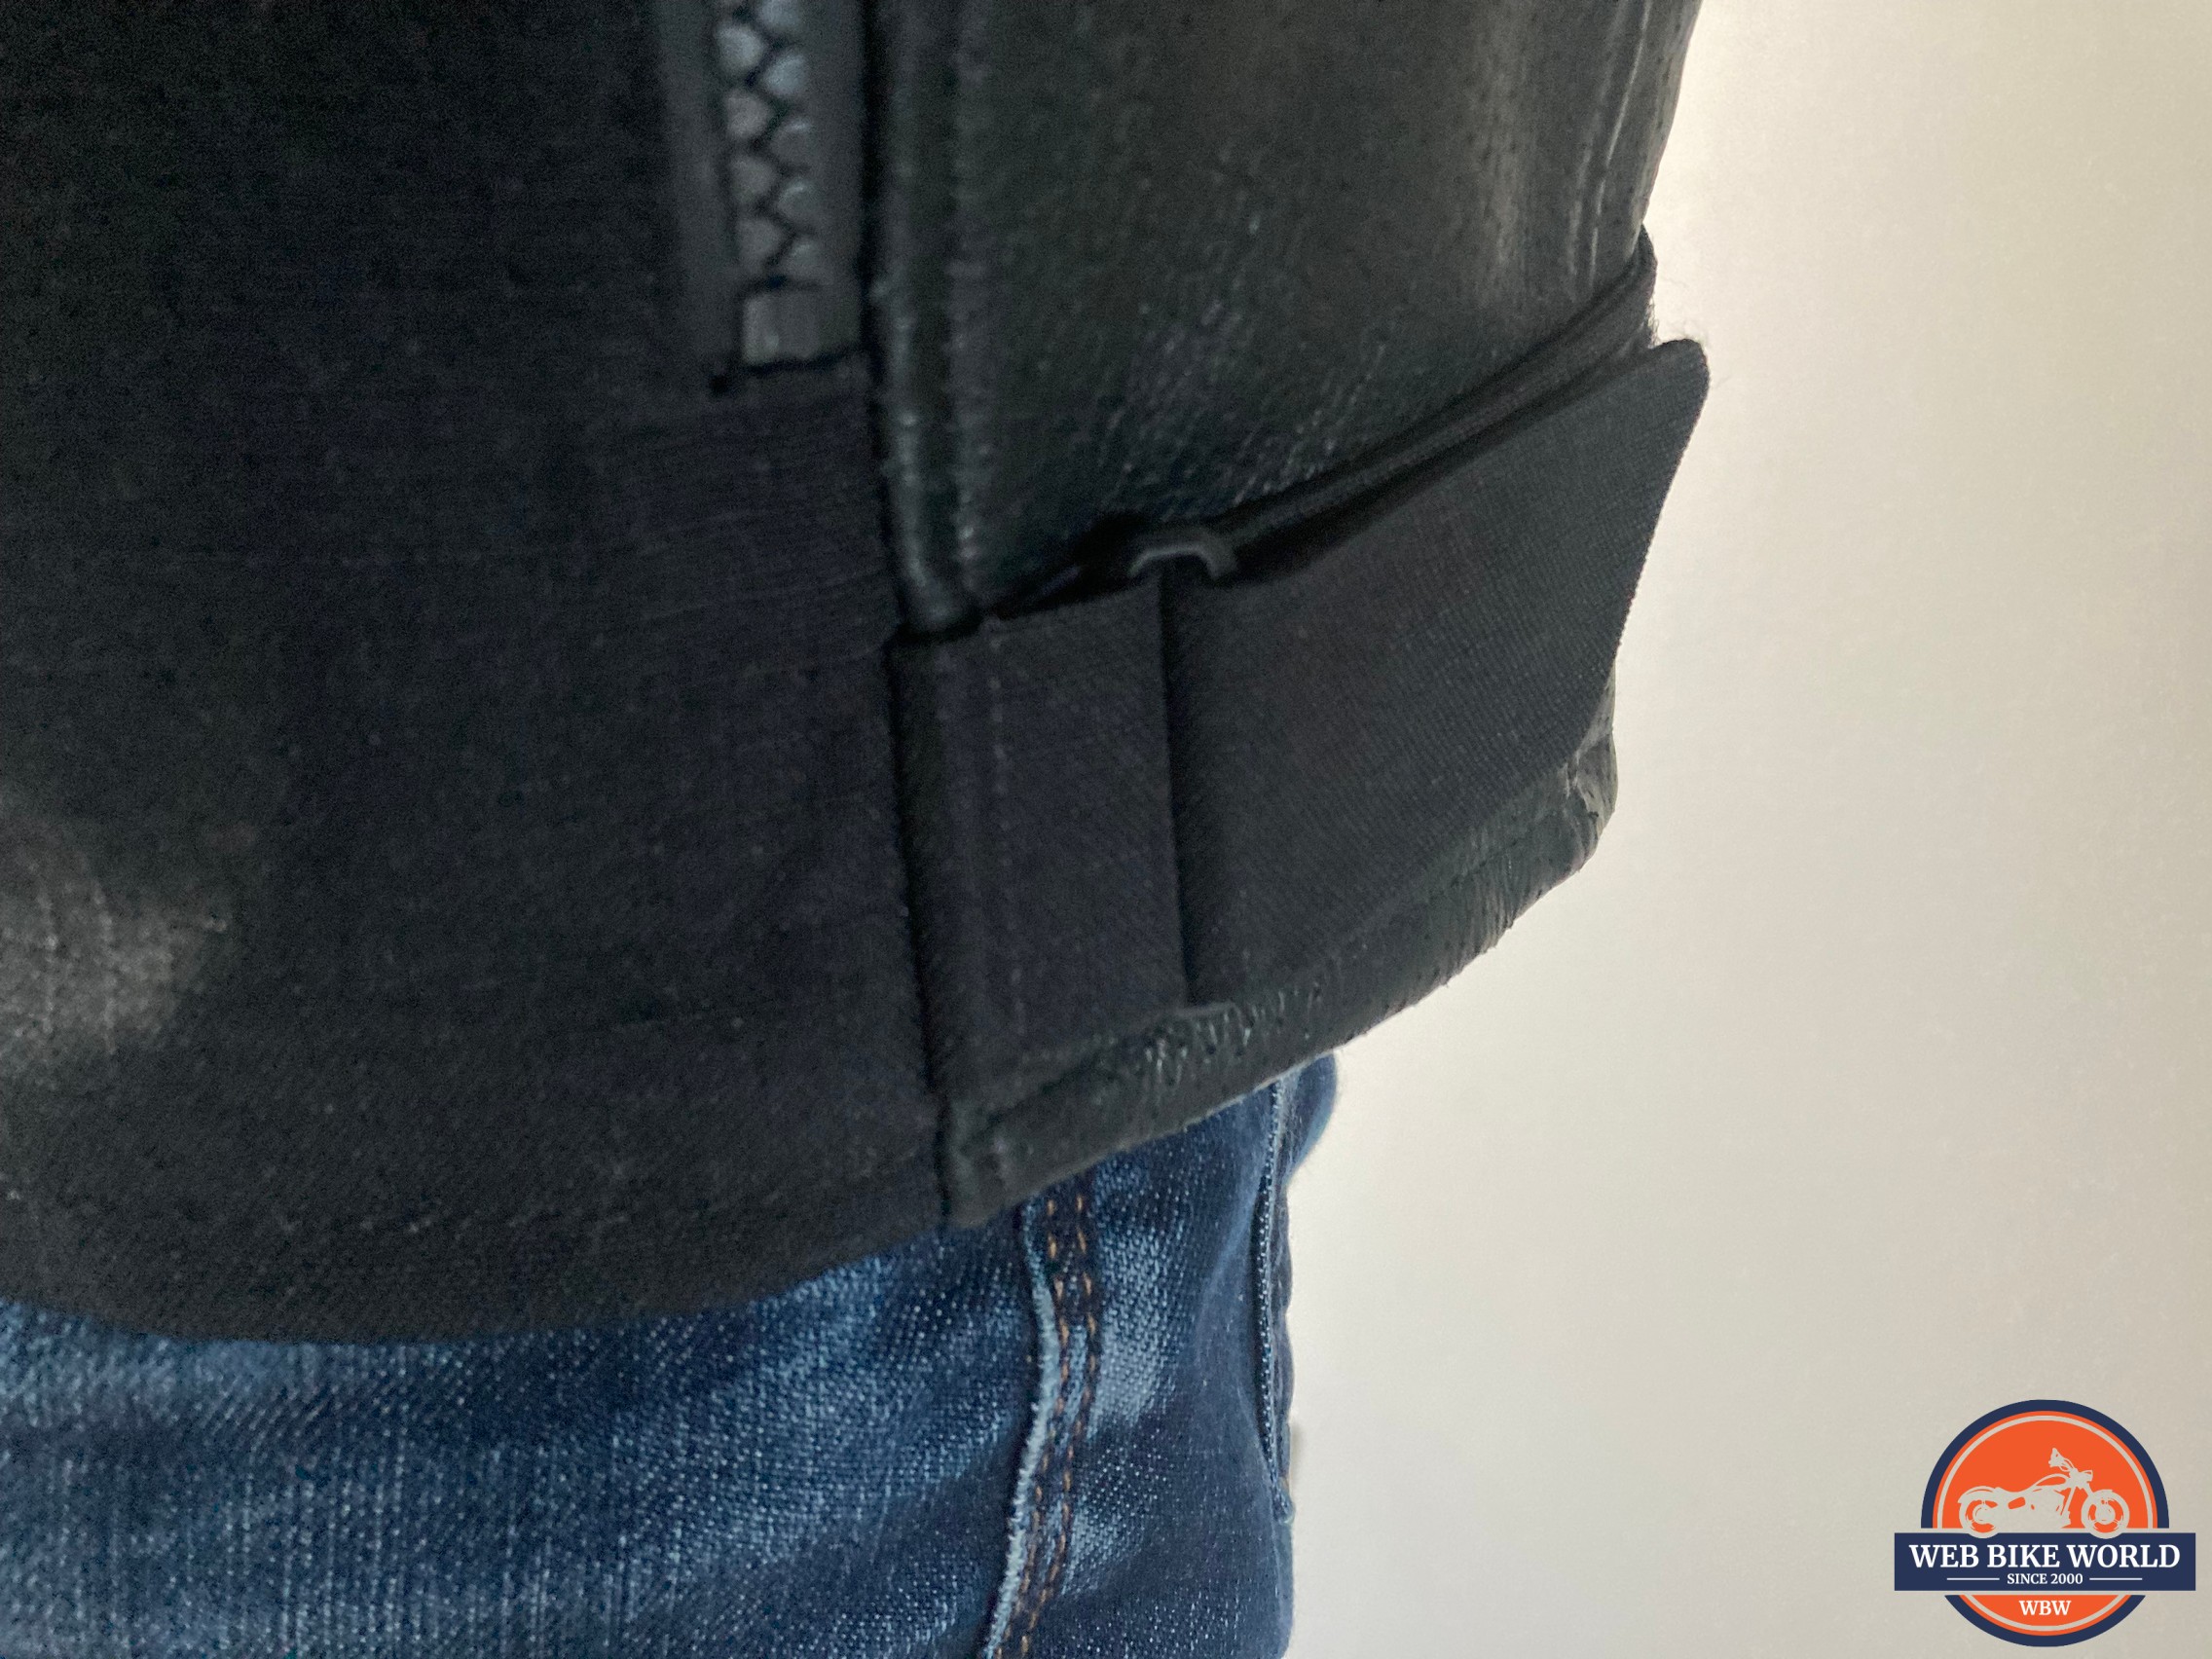 Velcro waist adjusters on the jacket